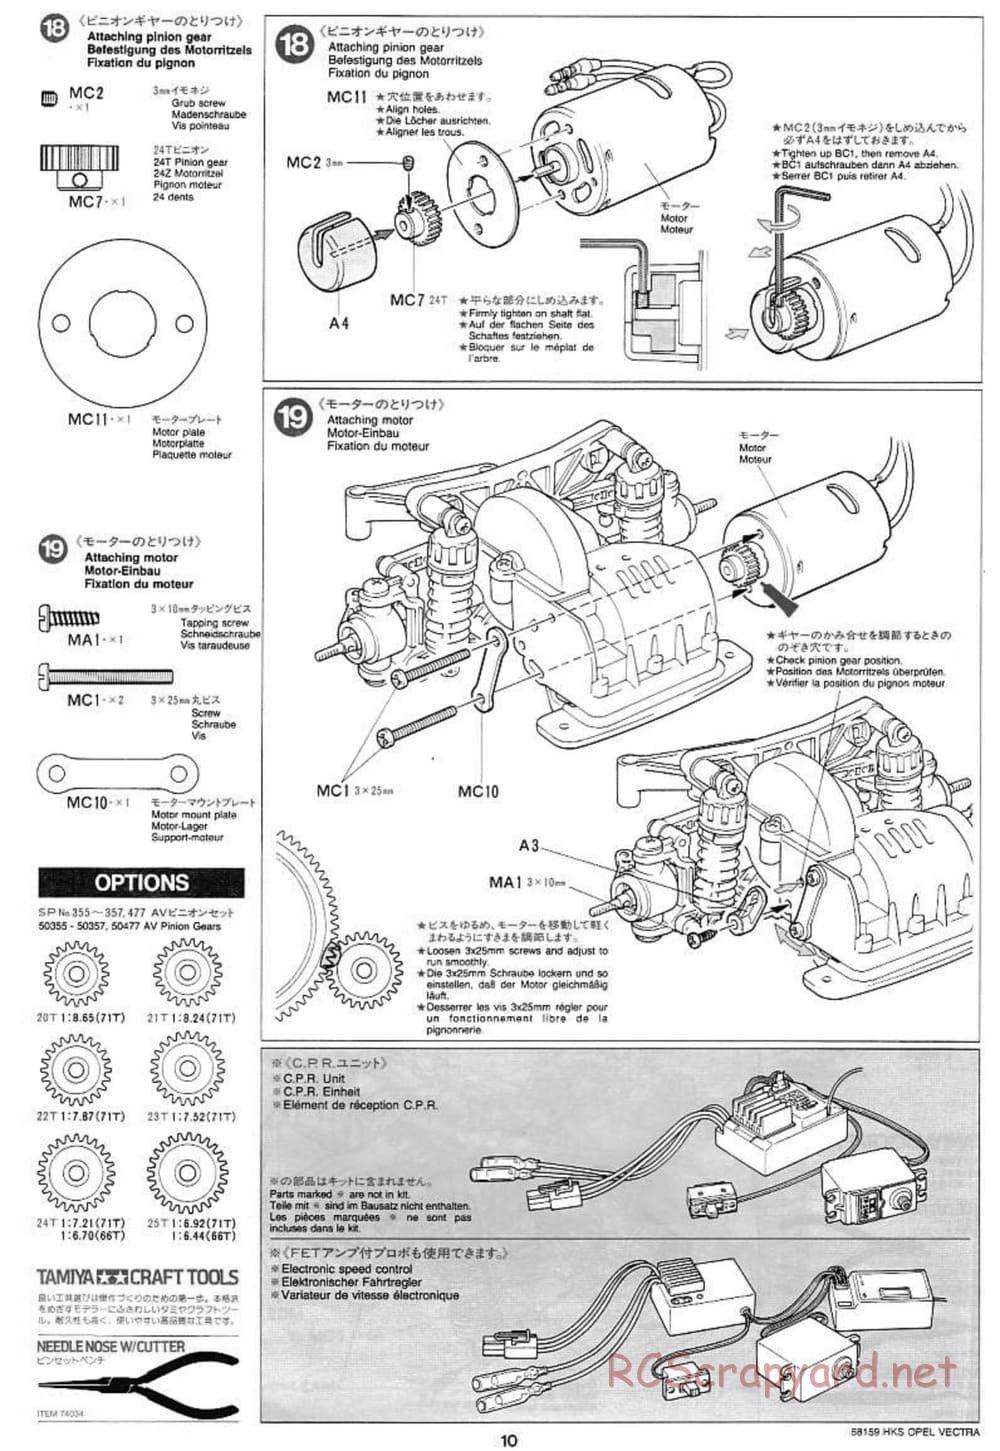 Tamiya - HKS Opel Vectra JTCC - FF-01 Chassis - Manual - Page 10